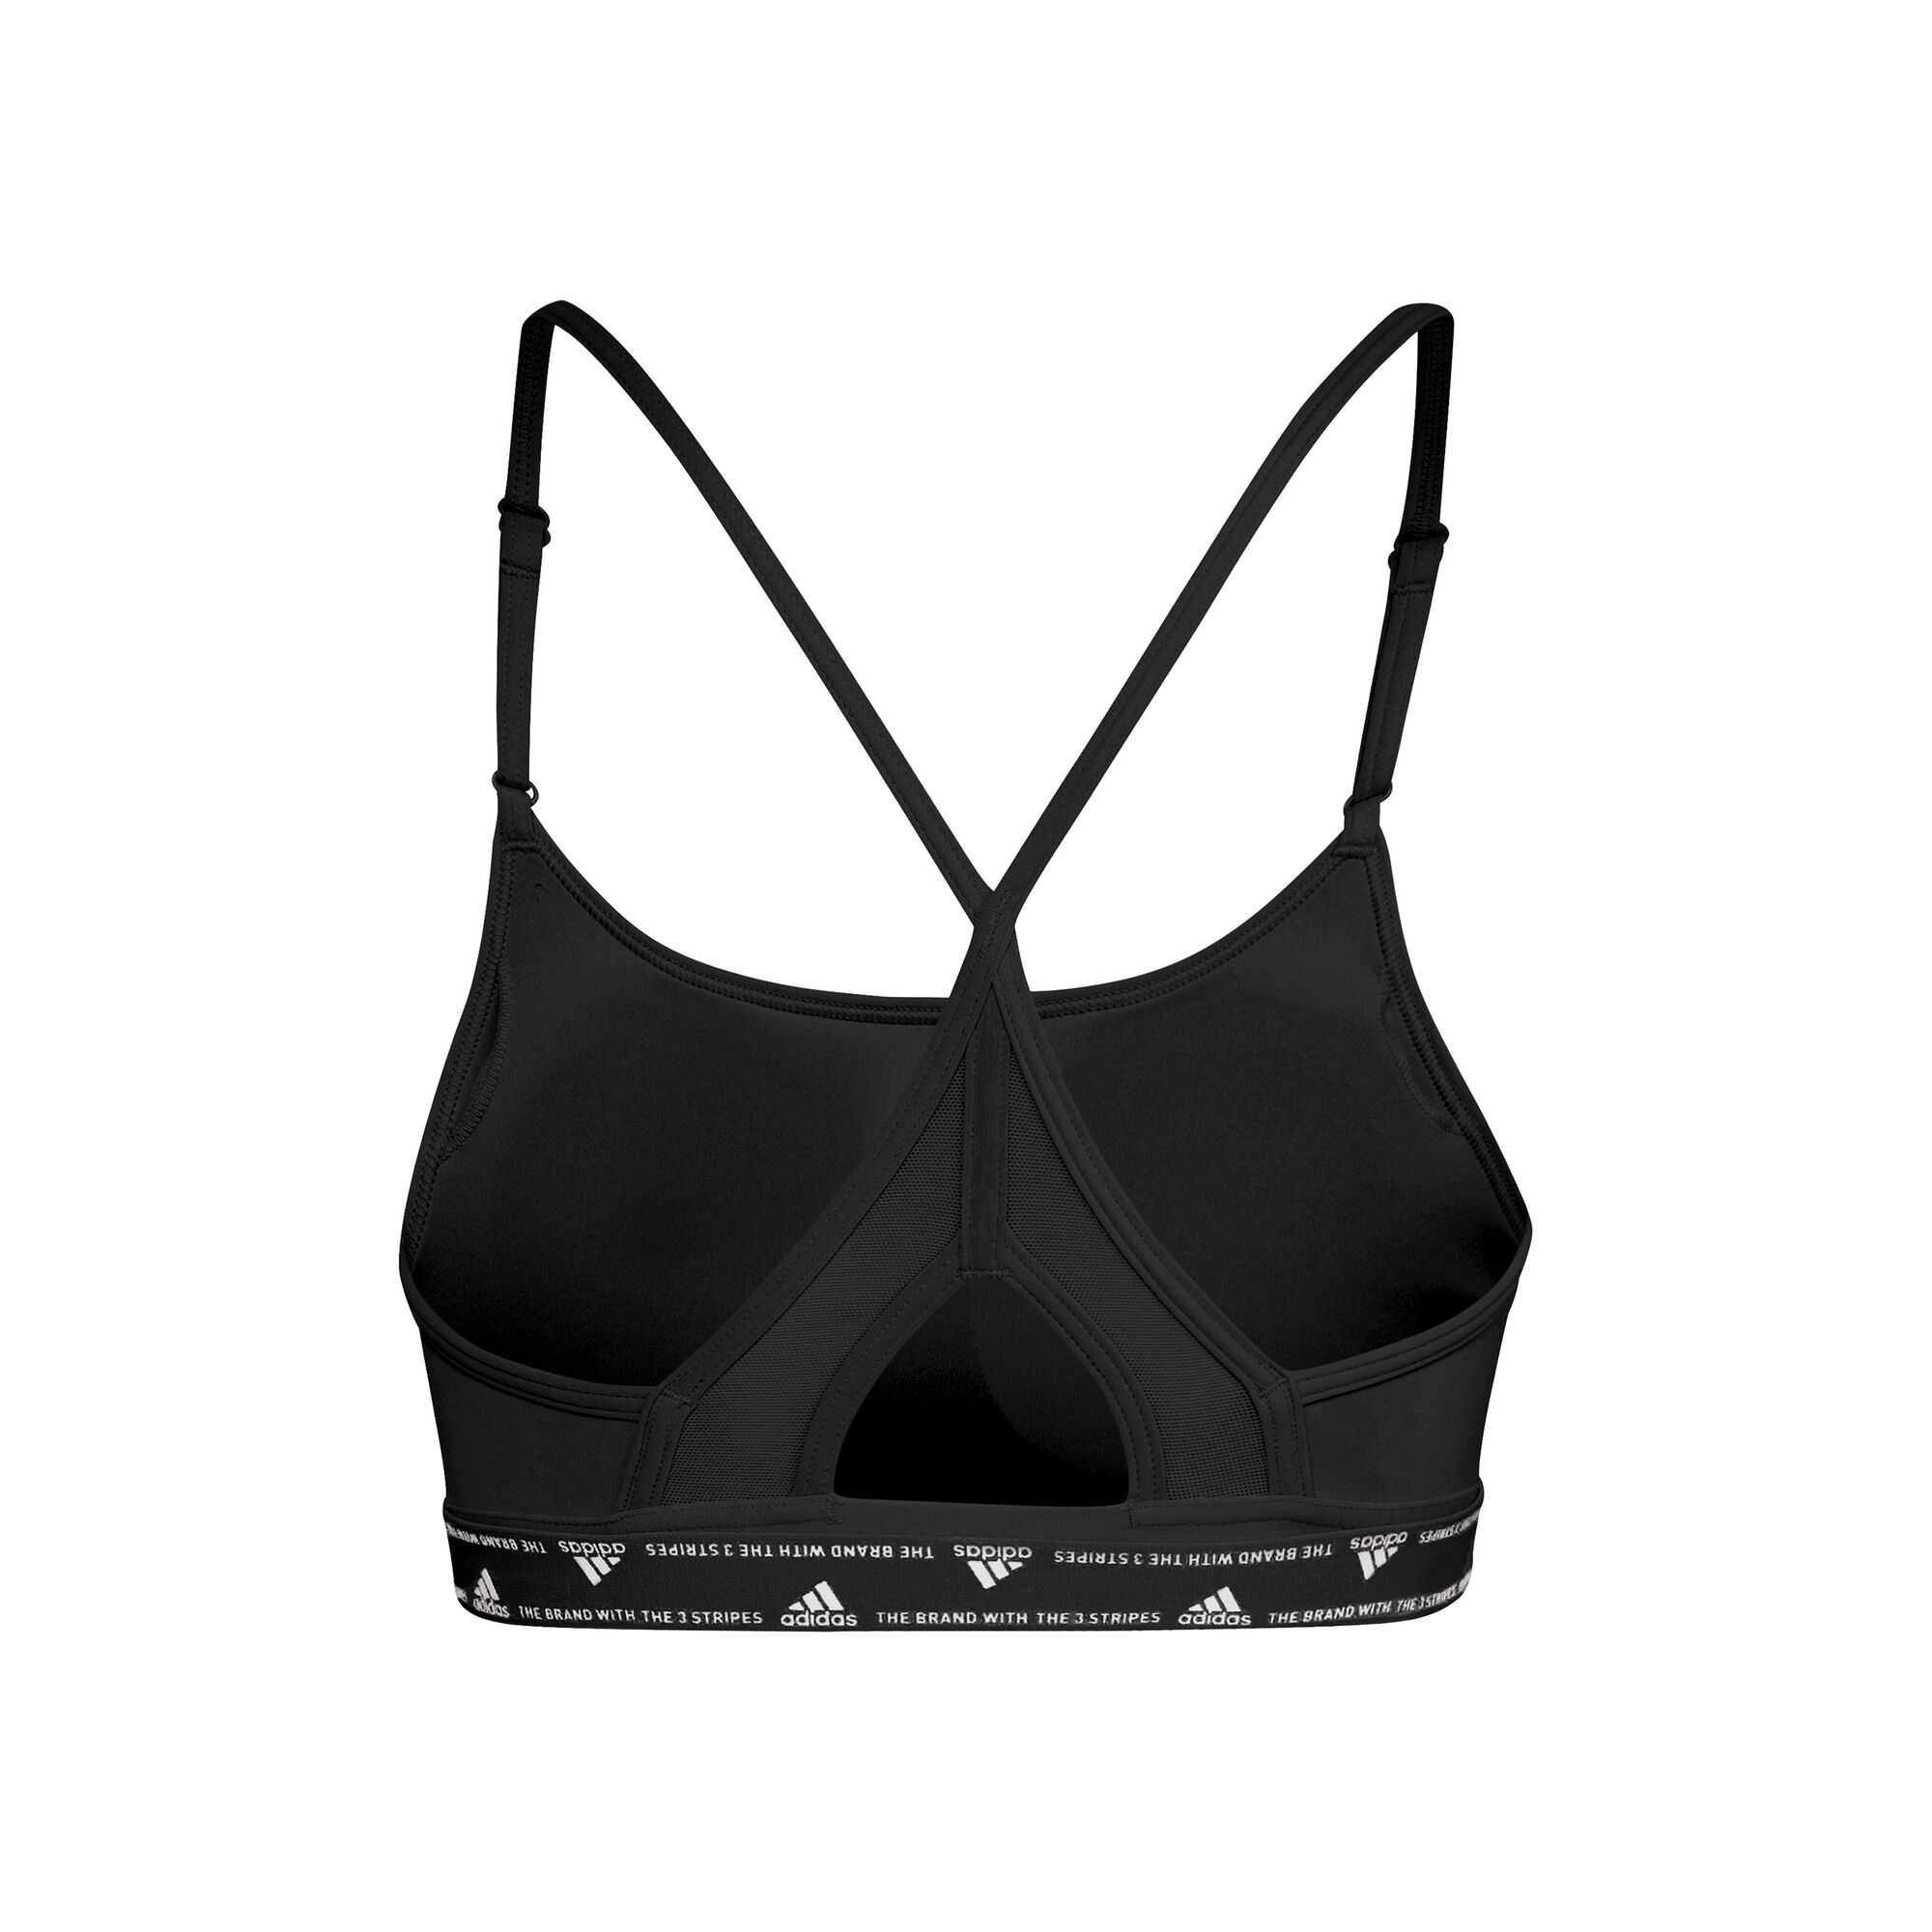 adidas Sports bra AEROREACT with mesh in white/ black